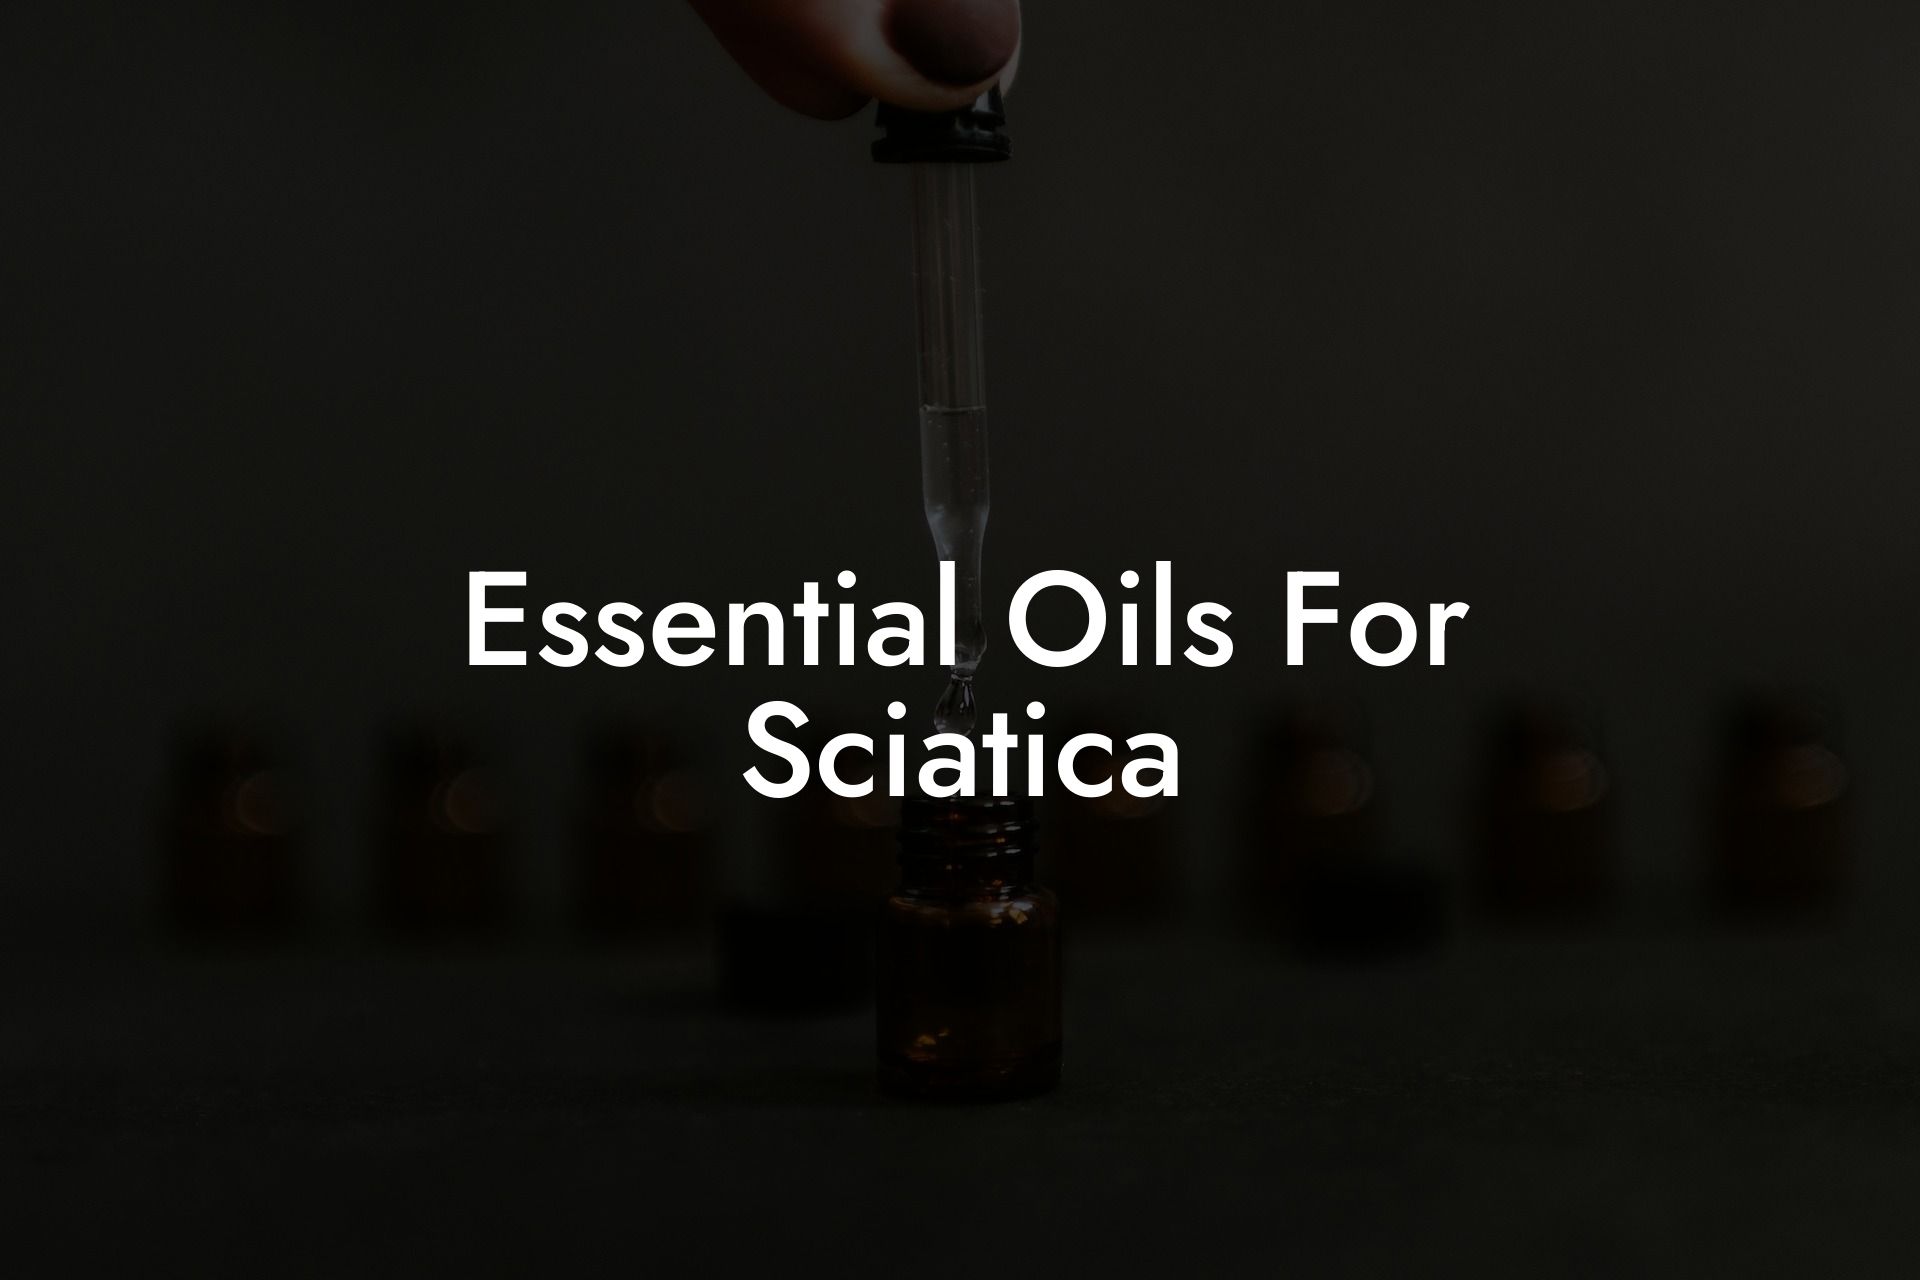 Essential Oils For Sciatica